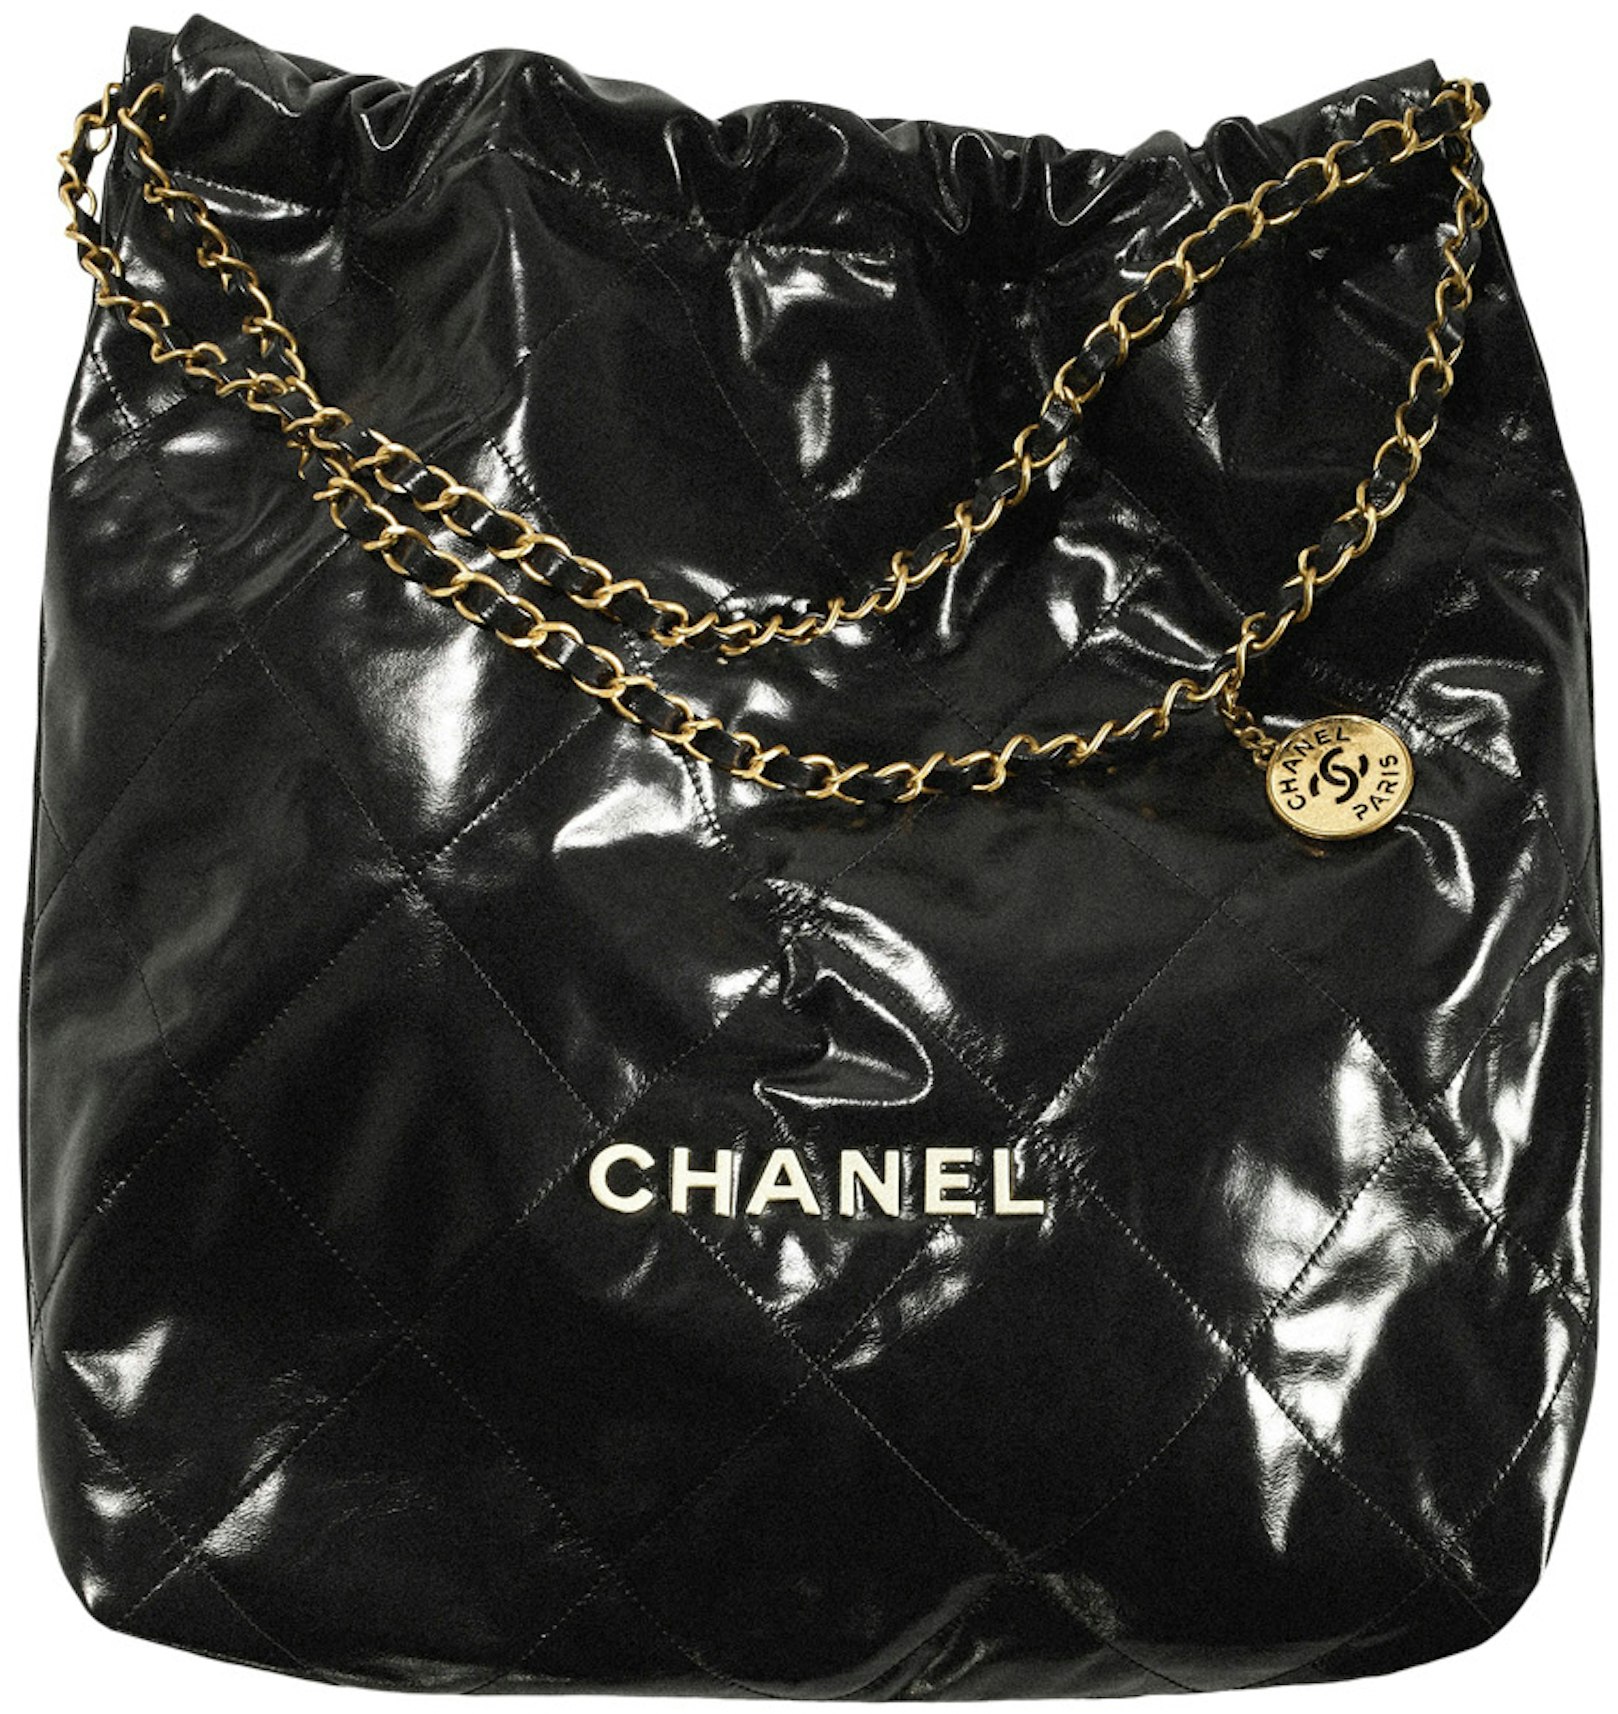 Pirat ufravigelige Rosefarve Chanel 22 Handbag Large 22S Calfskin Black/White Logo in Calfskin Leather  with Gold-tone - US